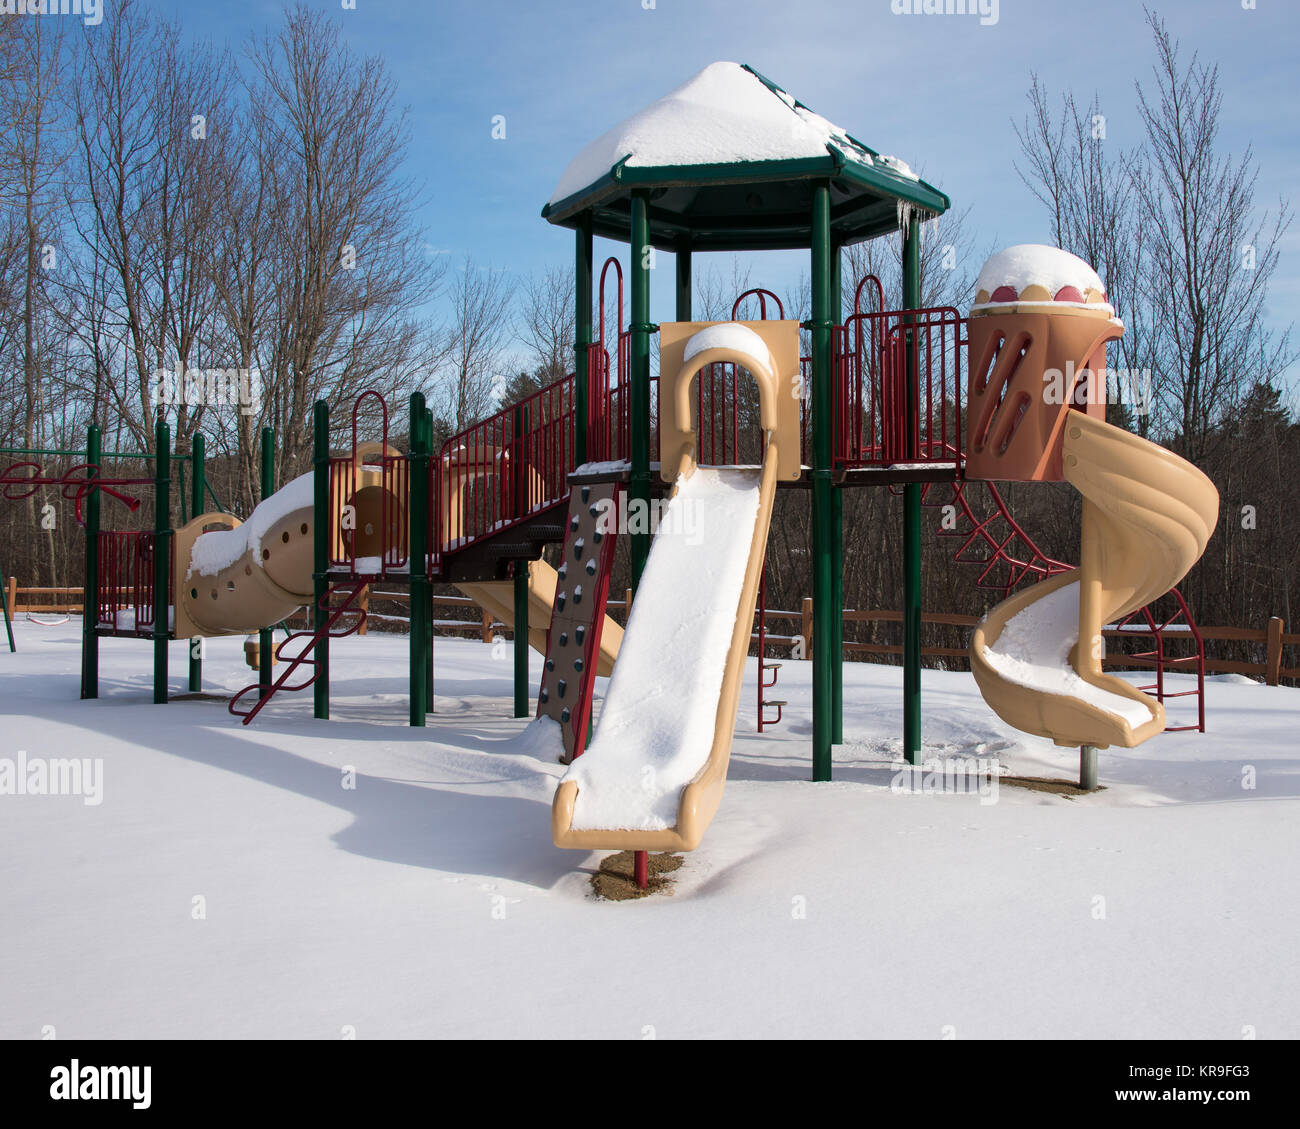 Équipement de jeu vide couvert de neige en spéculateur, NY USA Banque D'Images